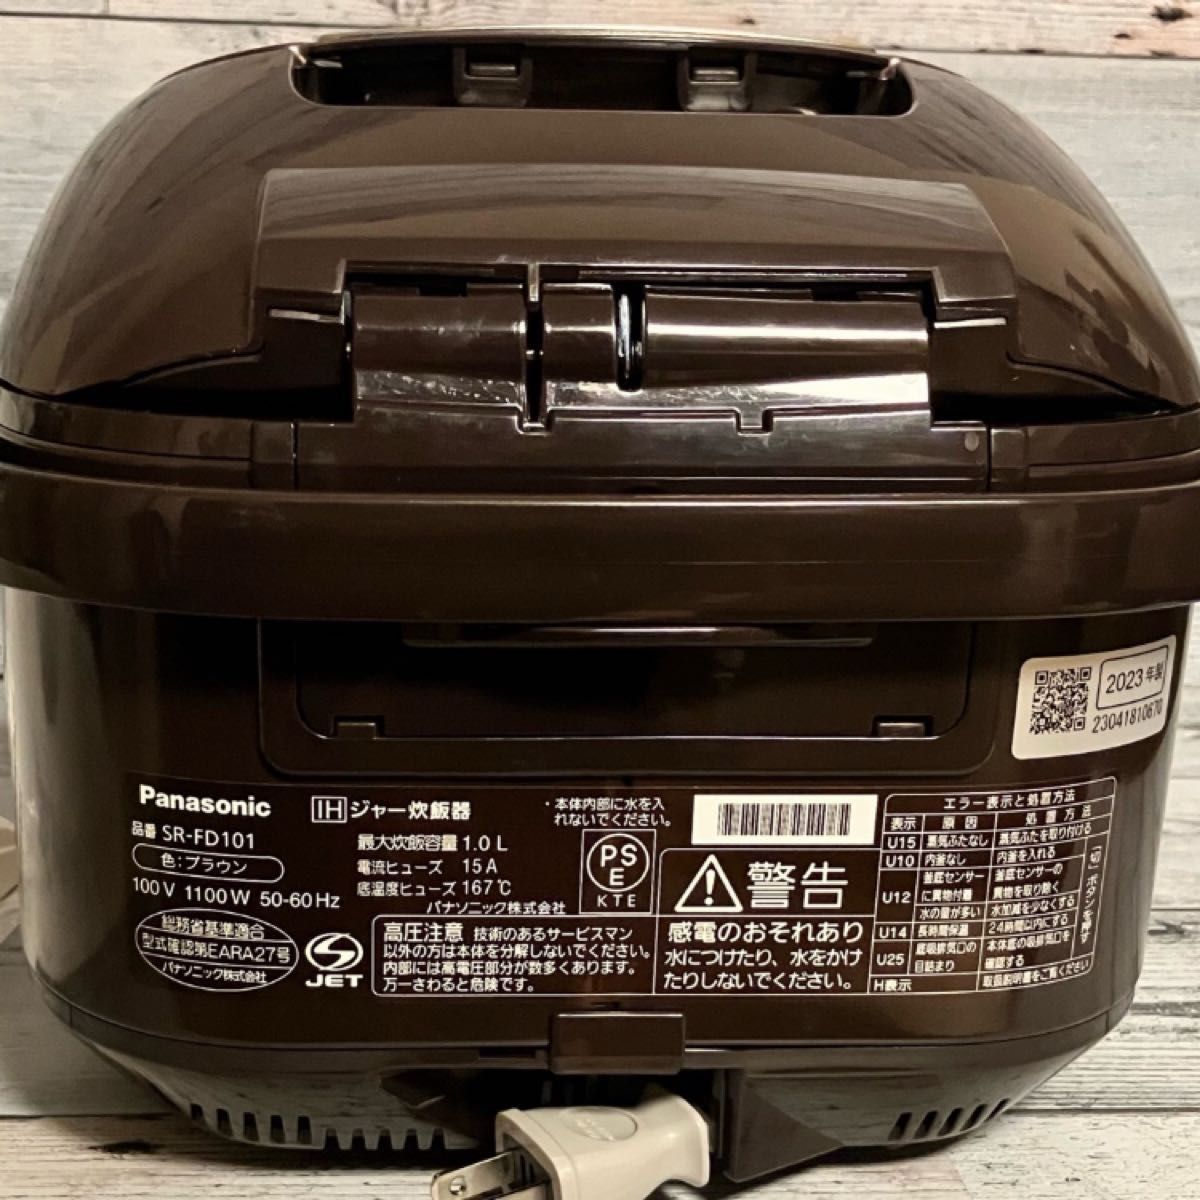 未使用品 Panasonic 炊飯器 SR-FD101 ブラウン